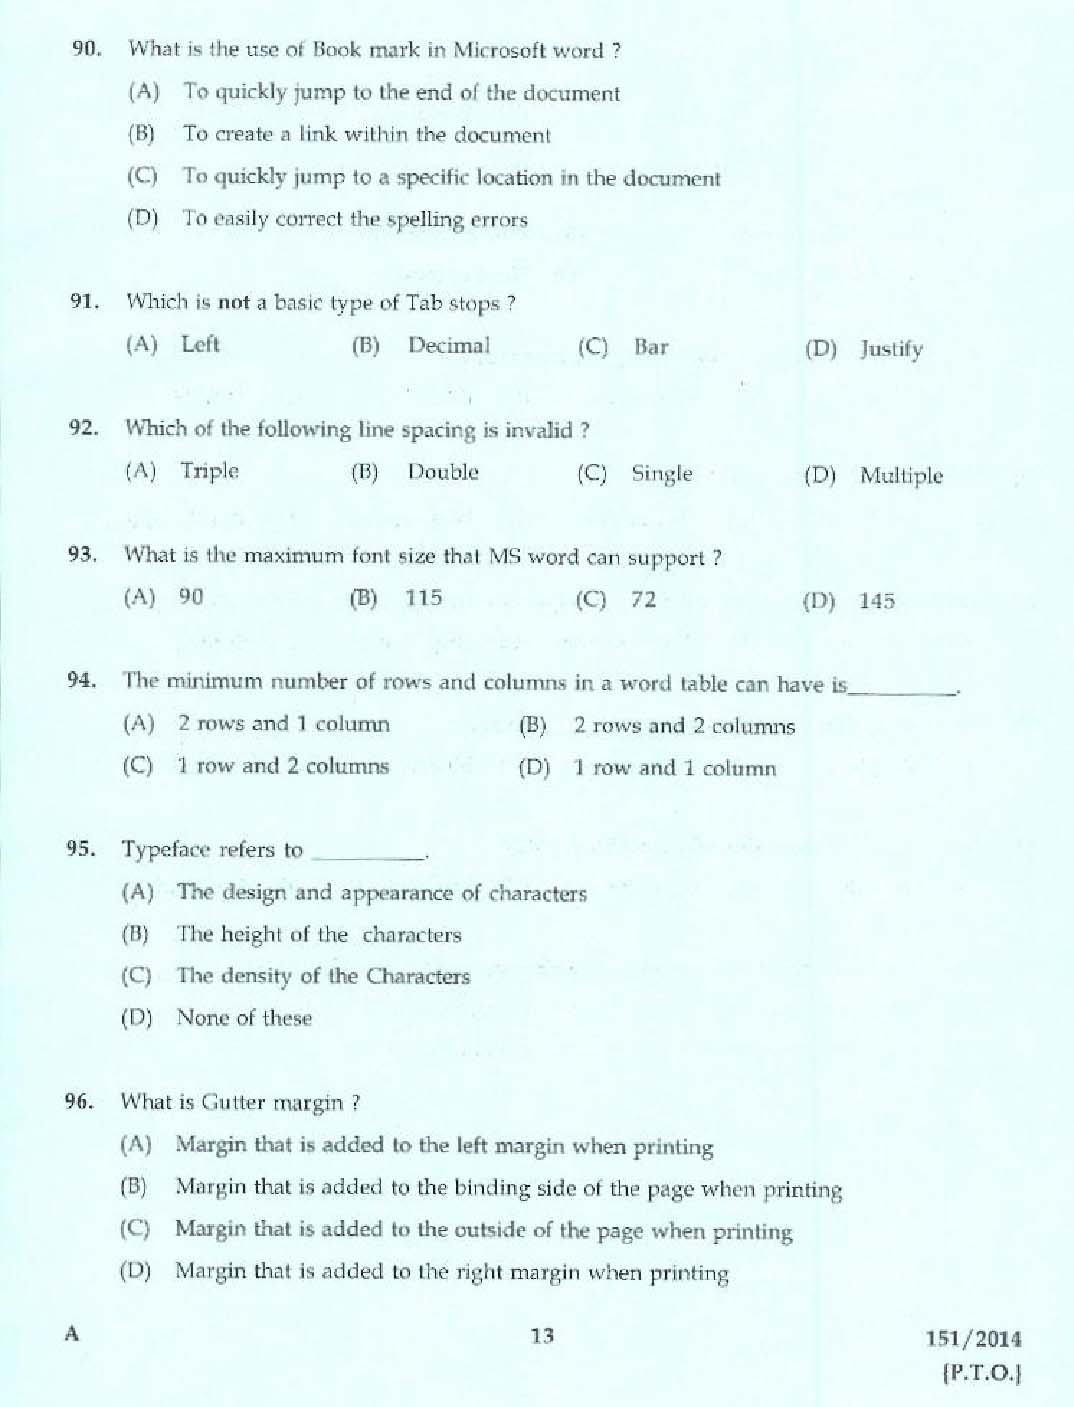 Kerala PSC Confidential Assistant Grade II Exam 2014 Question Paper Code 1512014 11